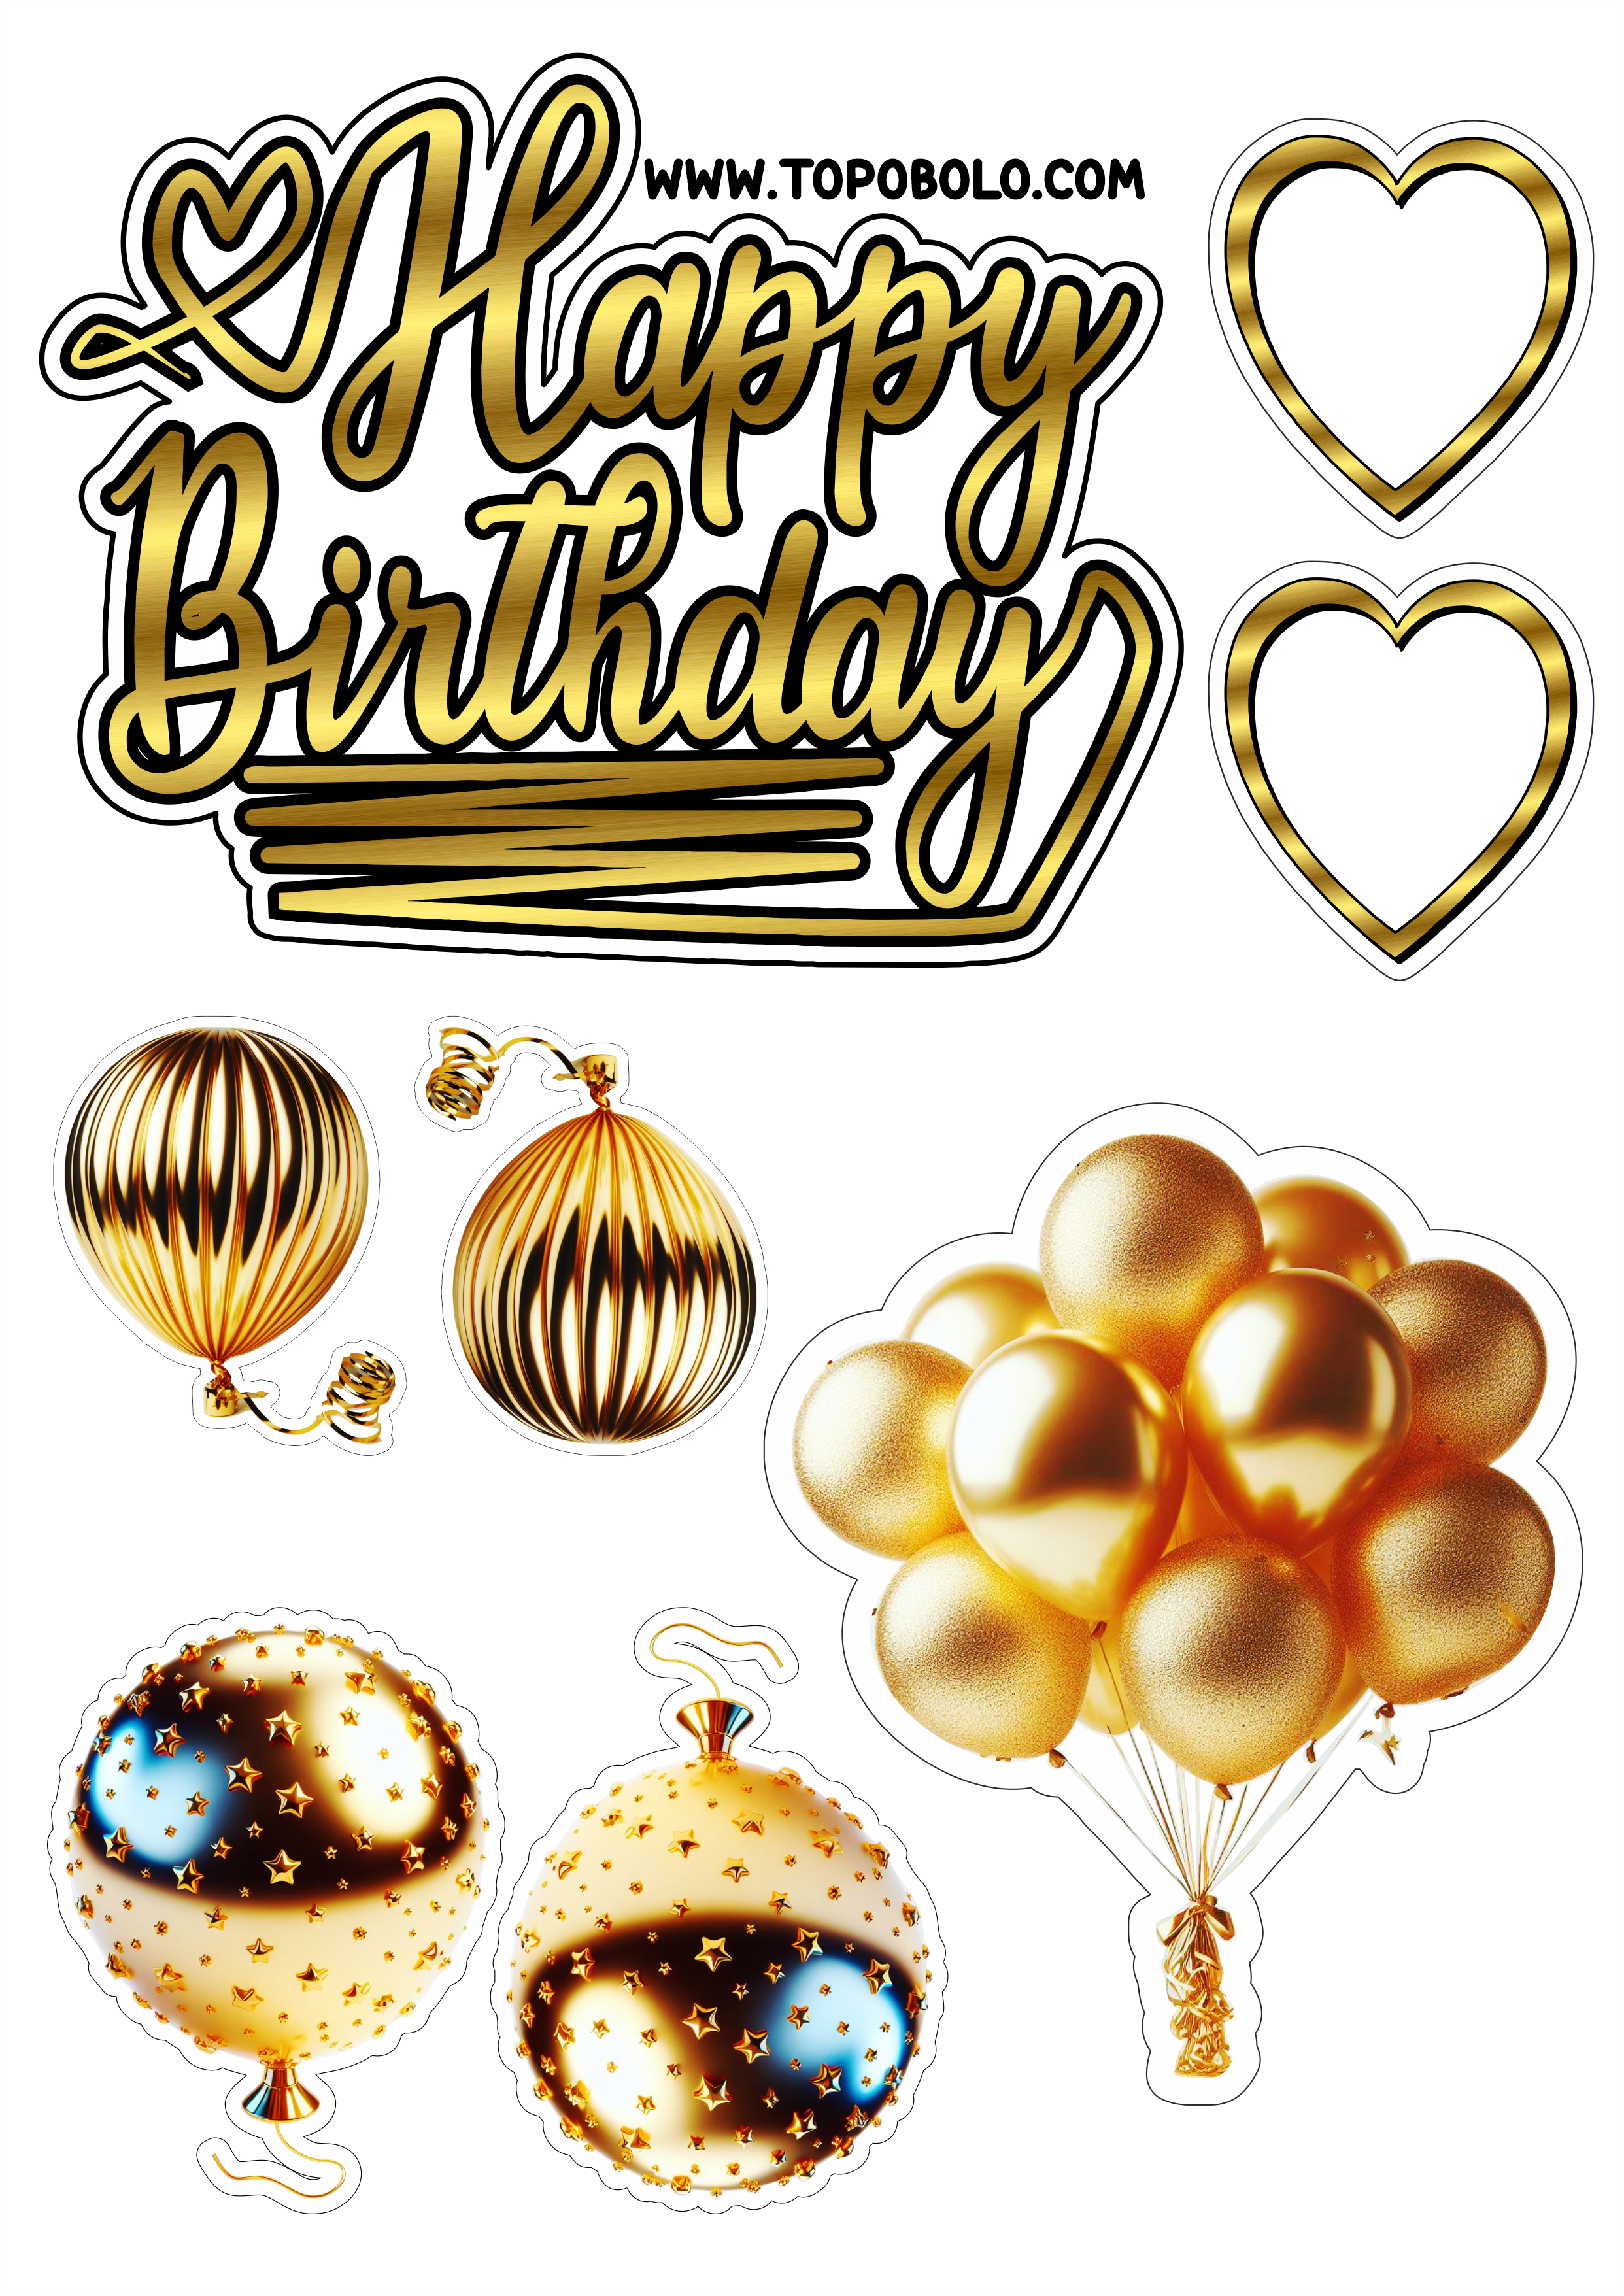 Topo de bolo para imprimir Happy Birthday aniversário dourado com corações e balões artigos personalizados grátis clipart png